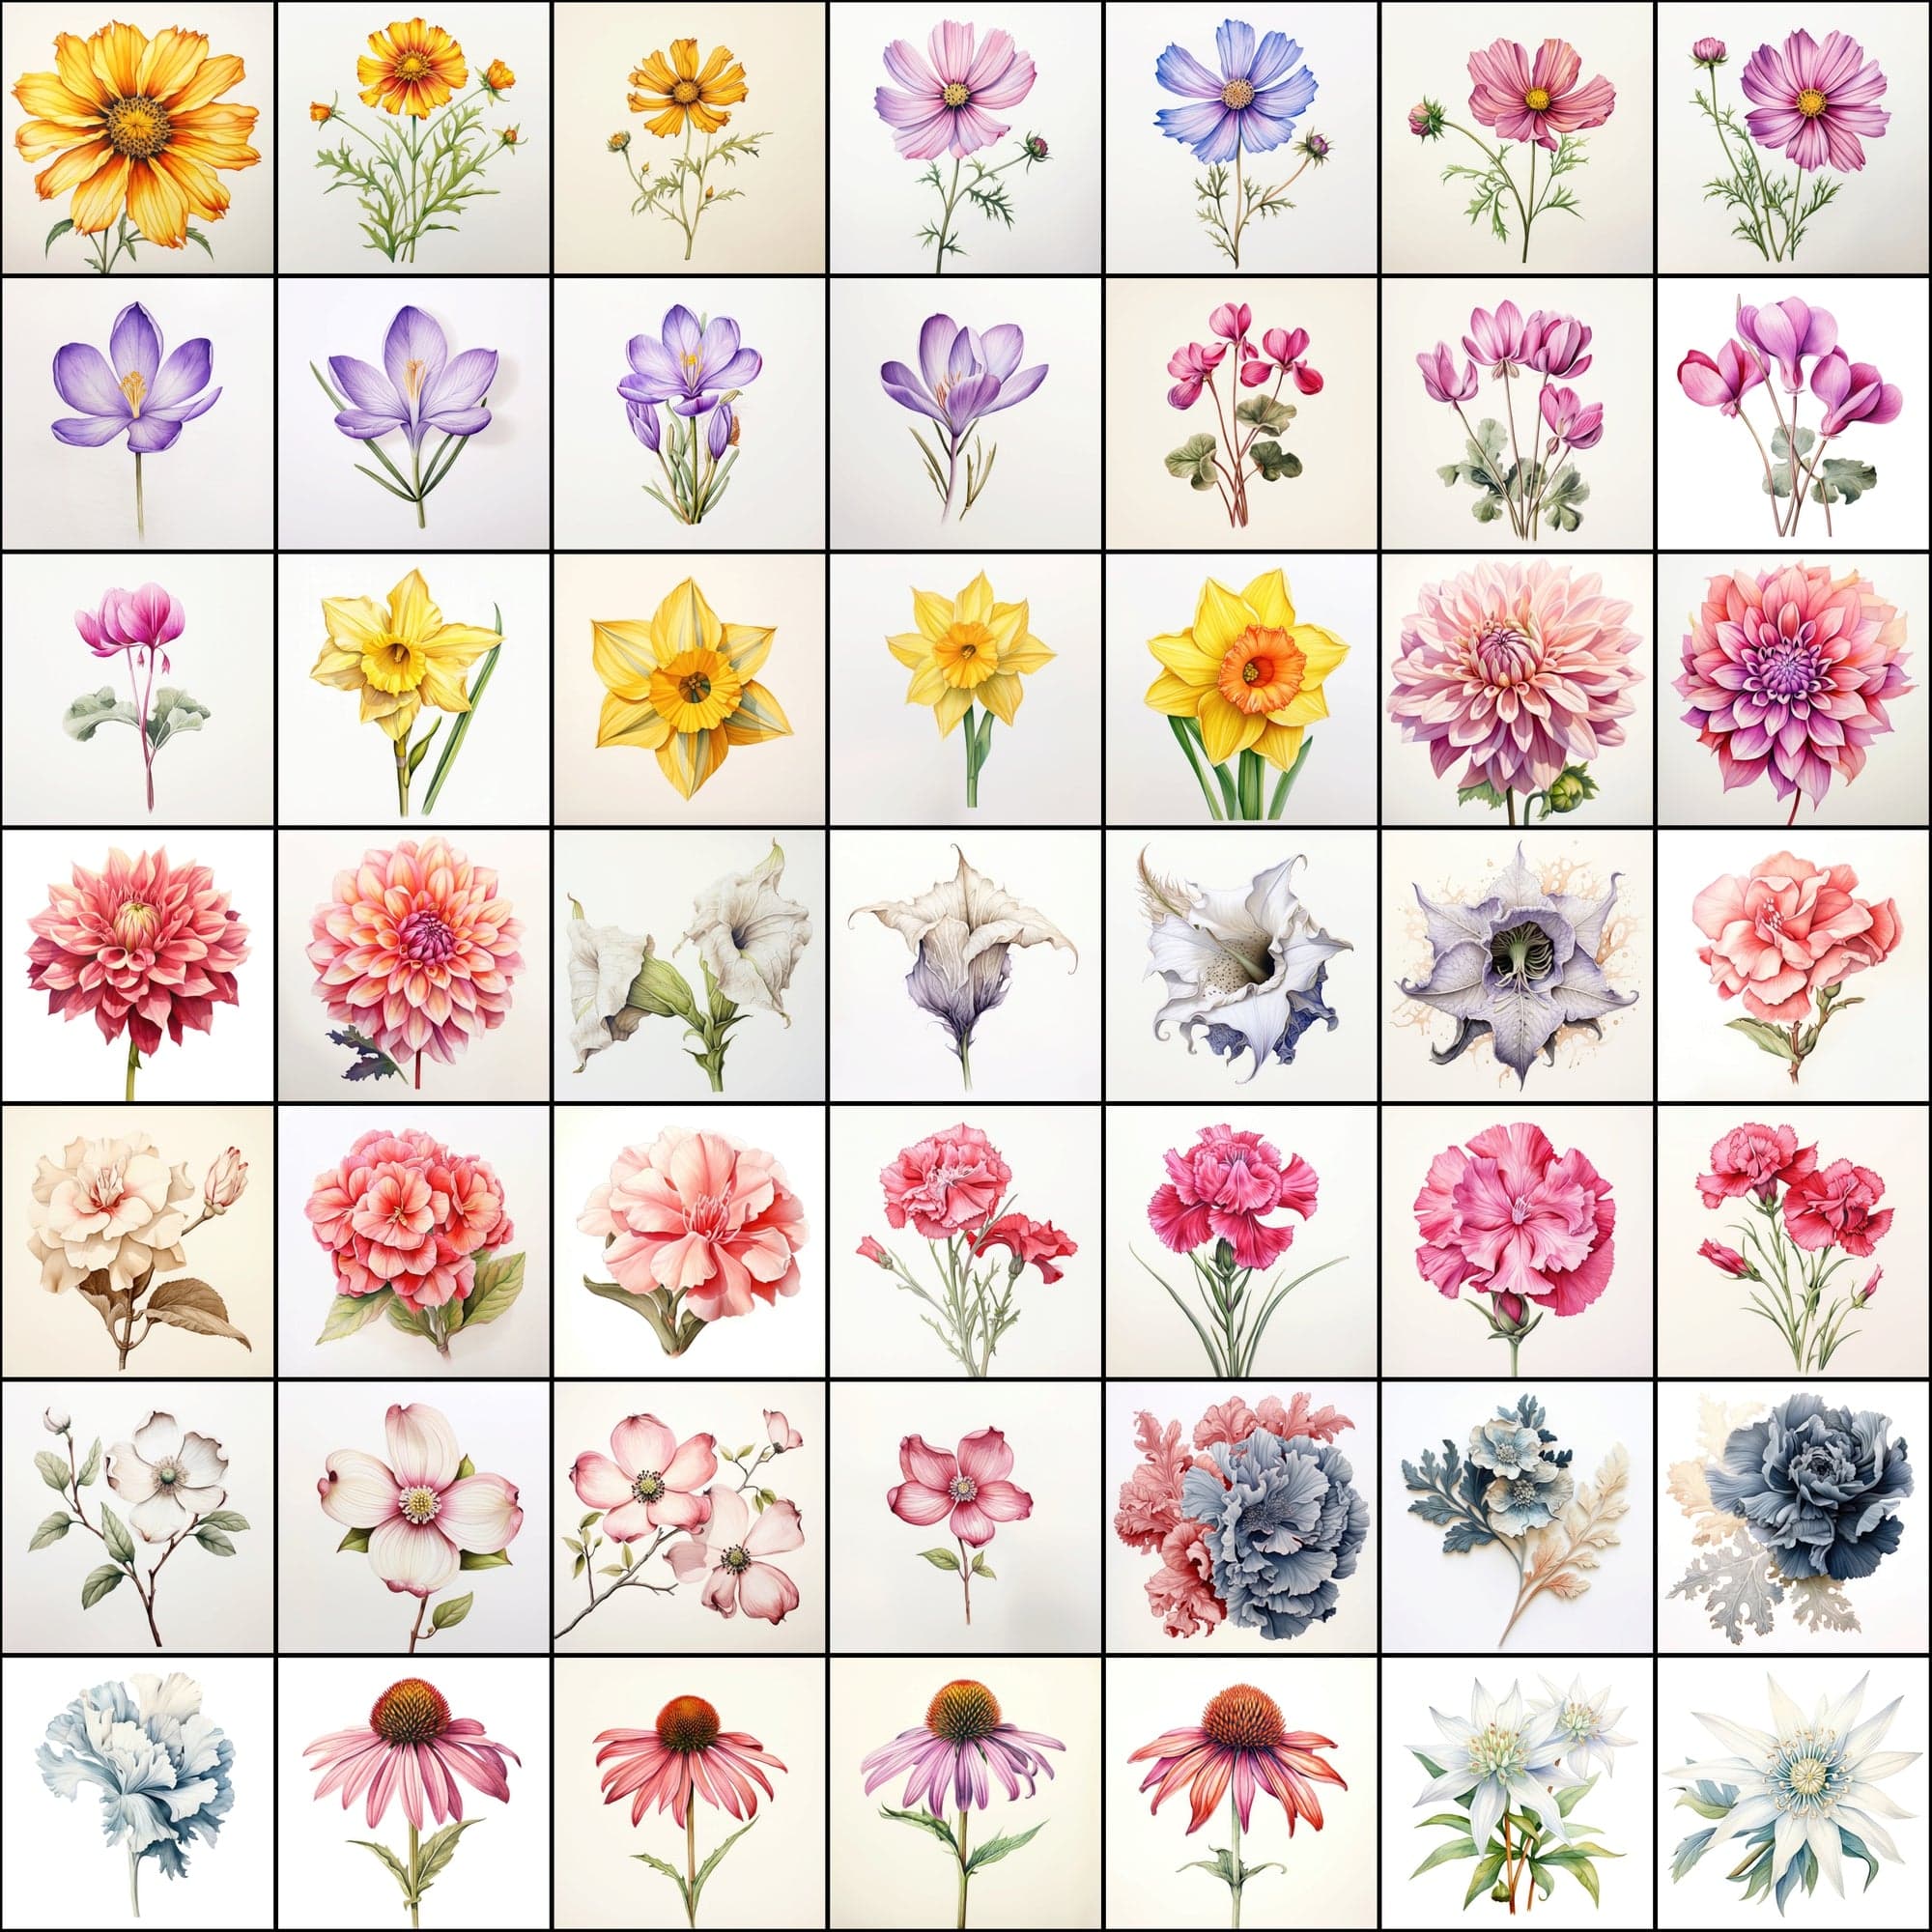 630 Flower PNG Images with Transparent Backgrounds & Commercial License Digital Download Sumobundle